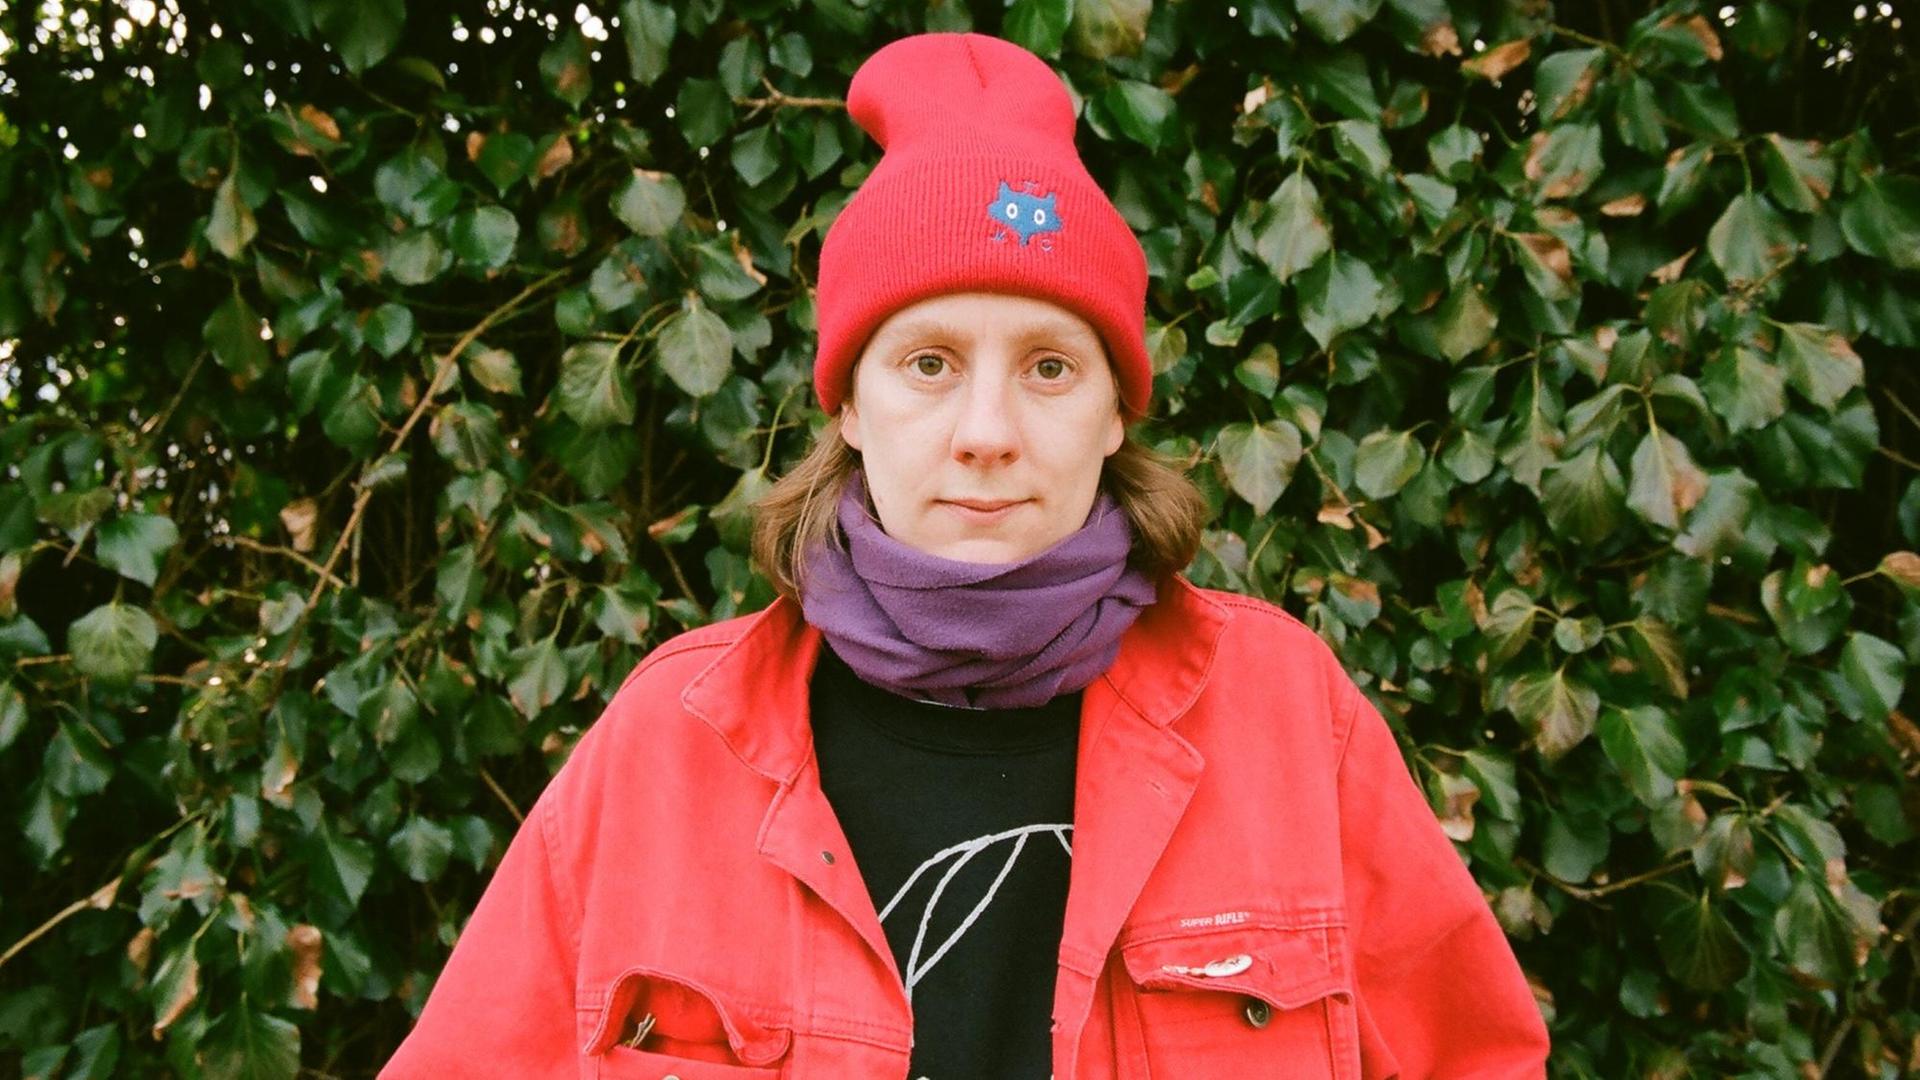 Autorin Anna Haifisch mit einer roten Jacke und roter Wintermütze vor Efeu, guckt direkt in die Kamera